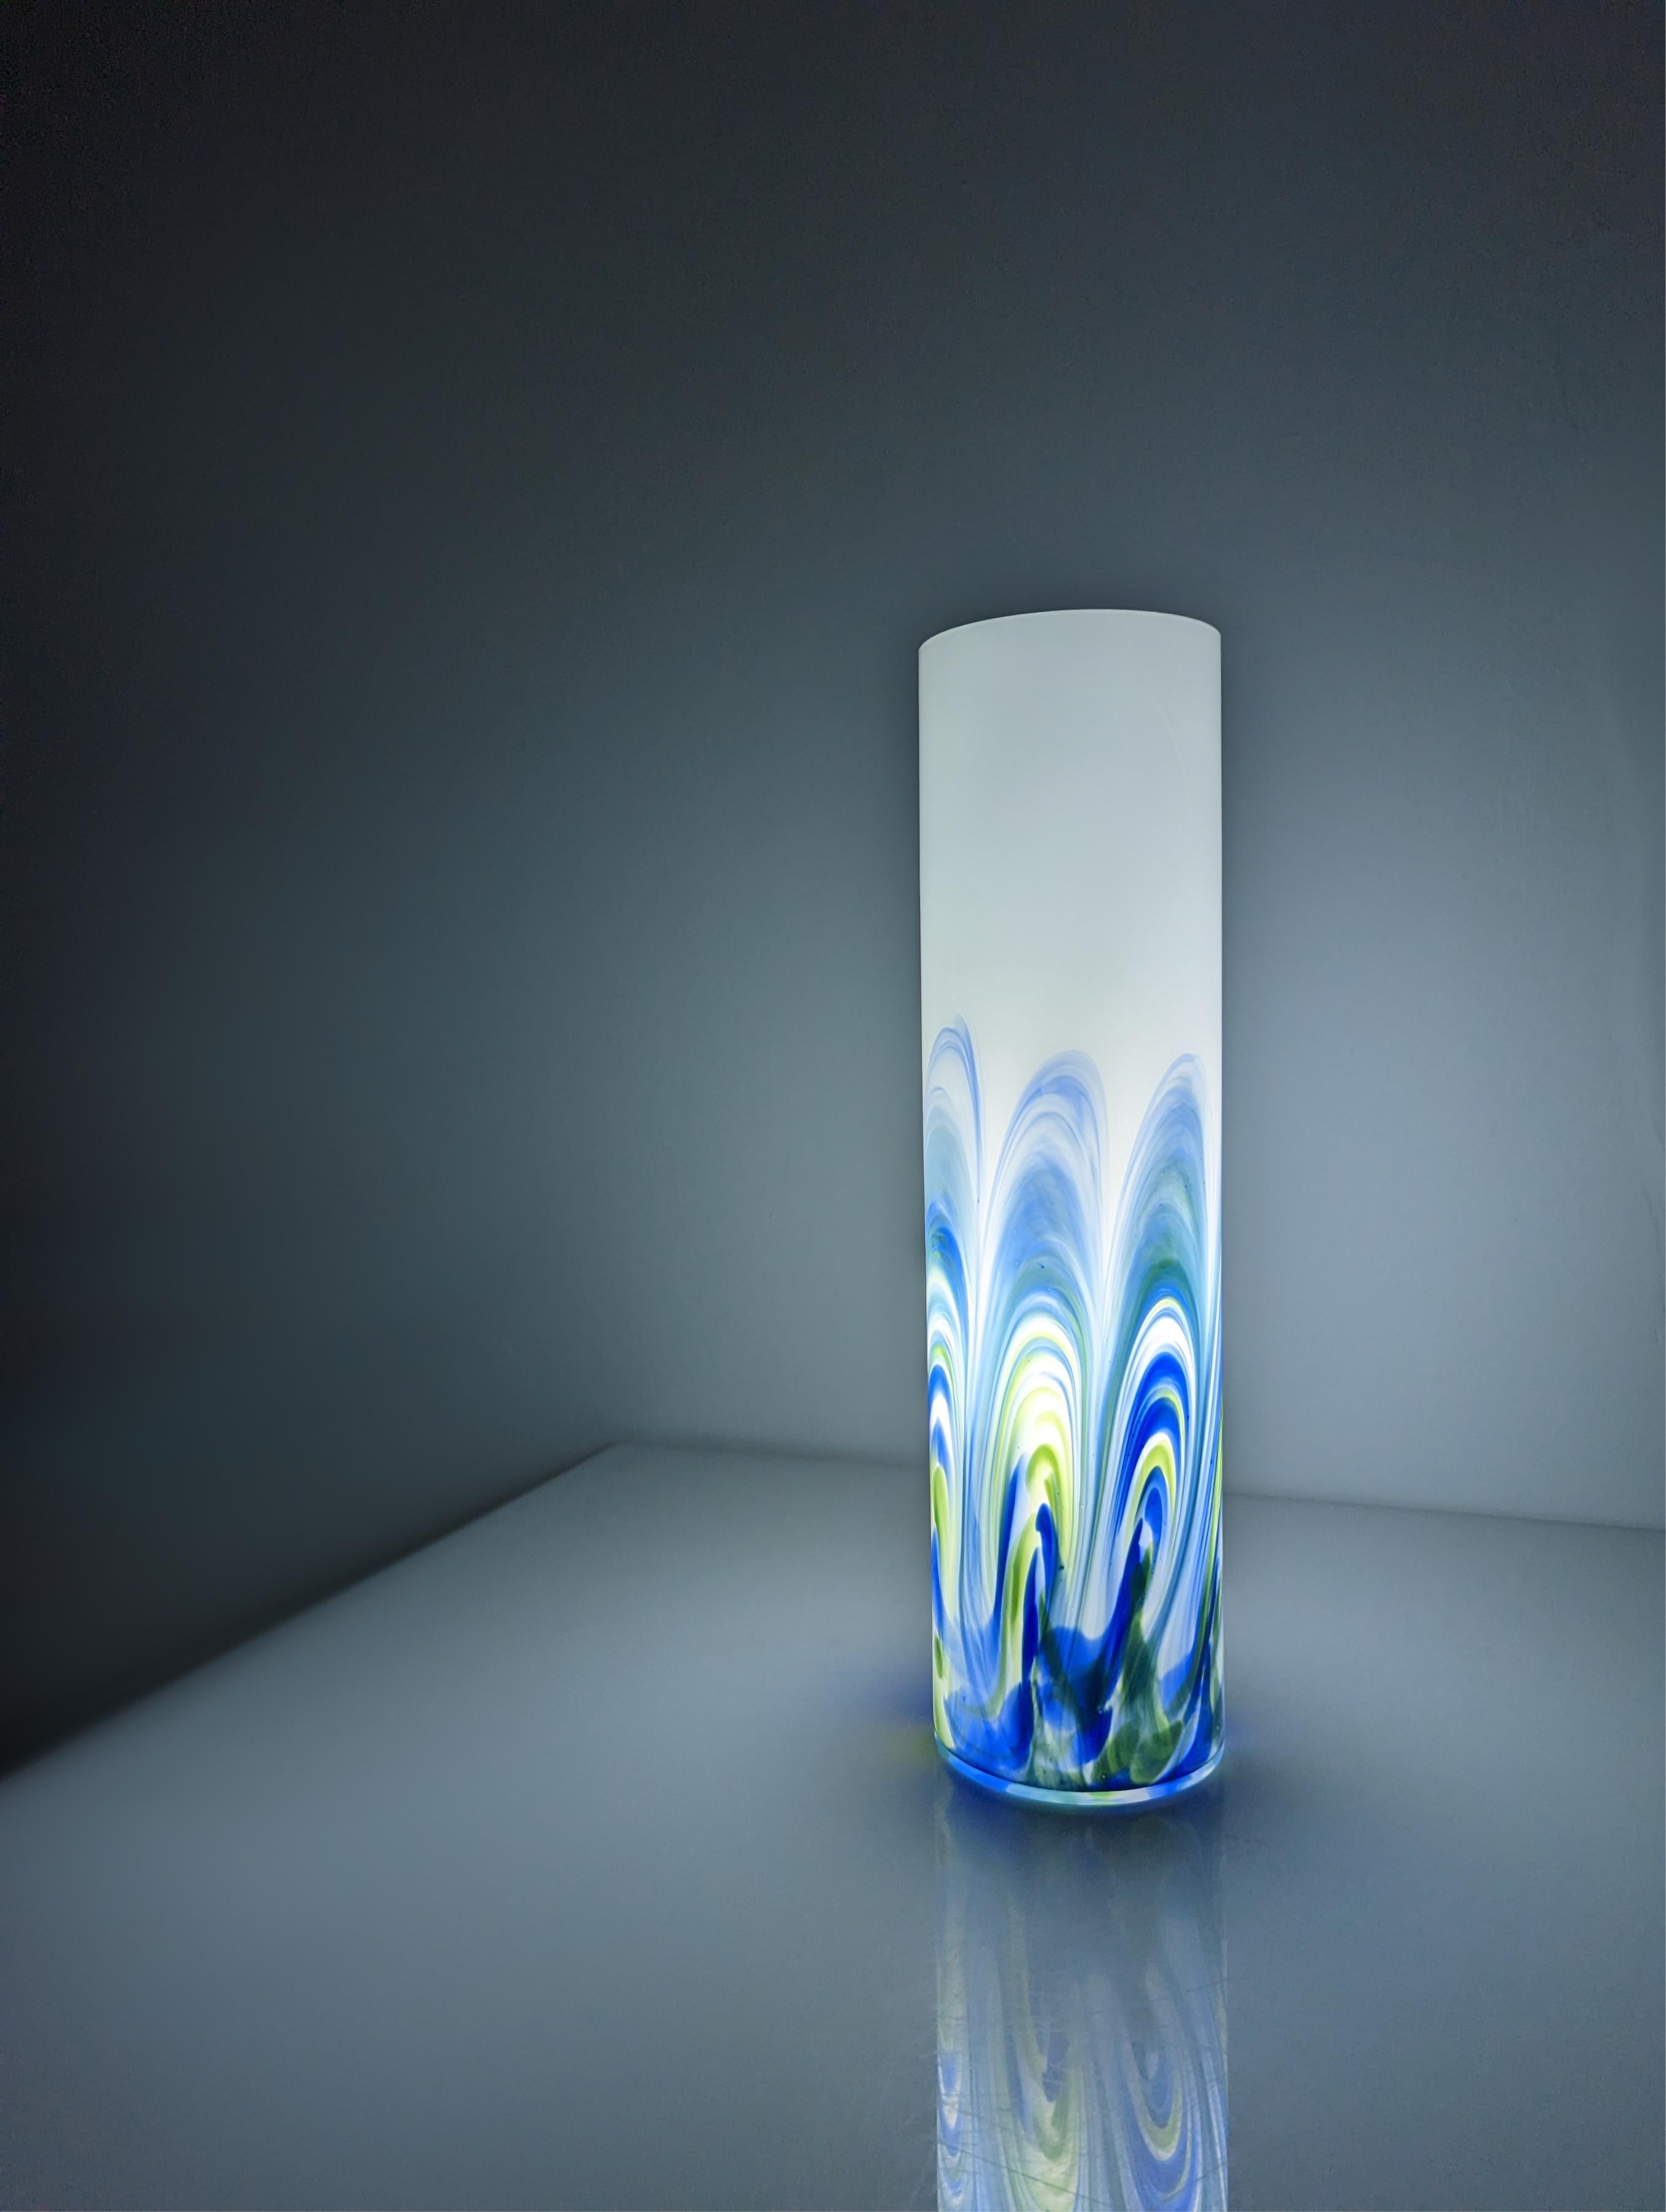 Lámpara realizada en cristal de Murano blanco con ondas de tonos azules y verdes reflejando una preciosa luz y formas.

Dimensiones: 44,5 x 12 cm.